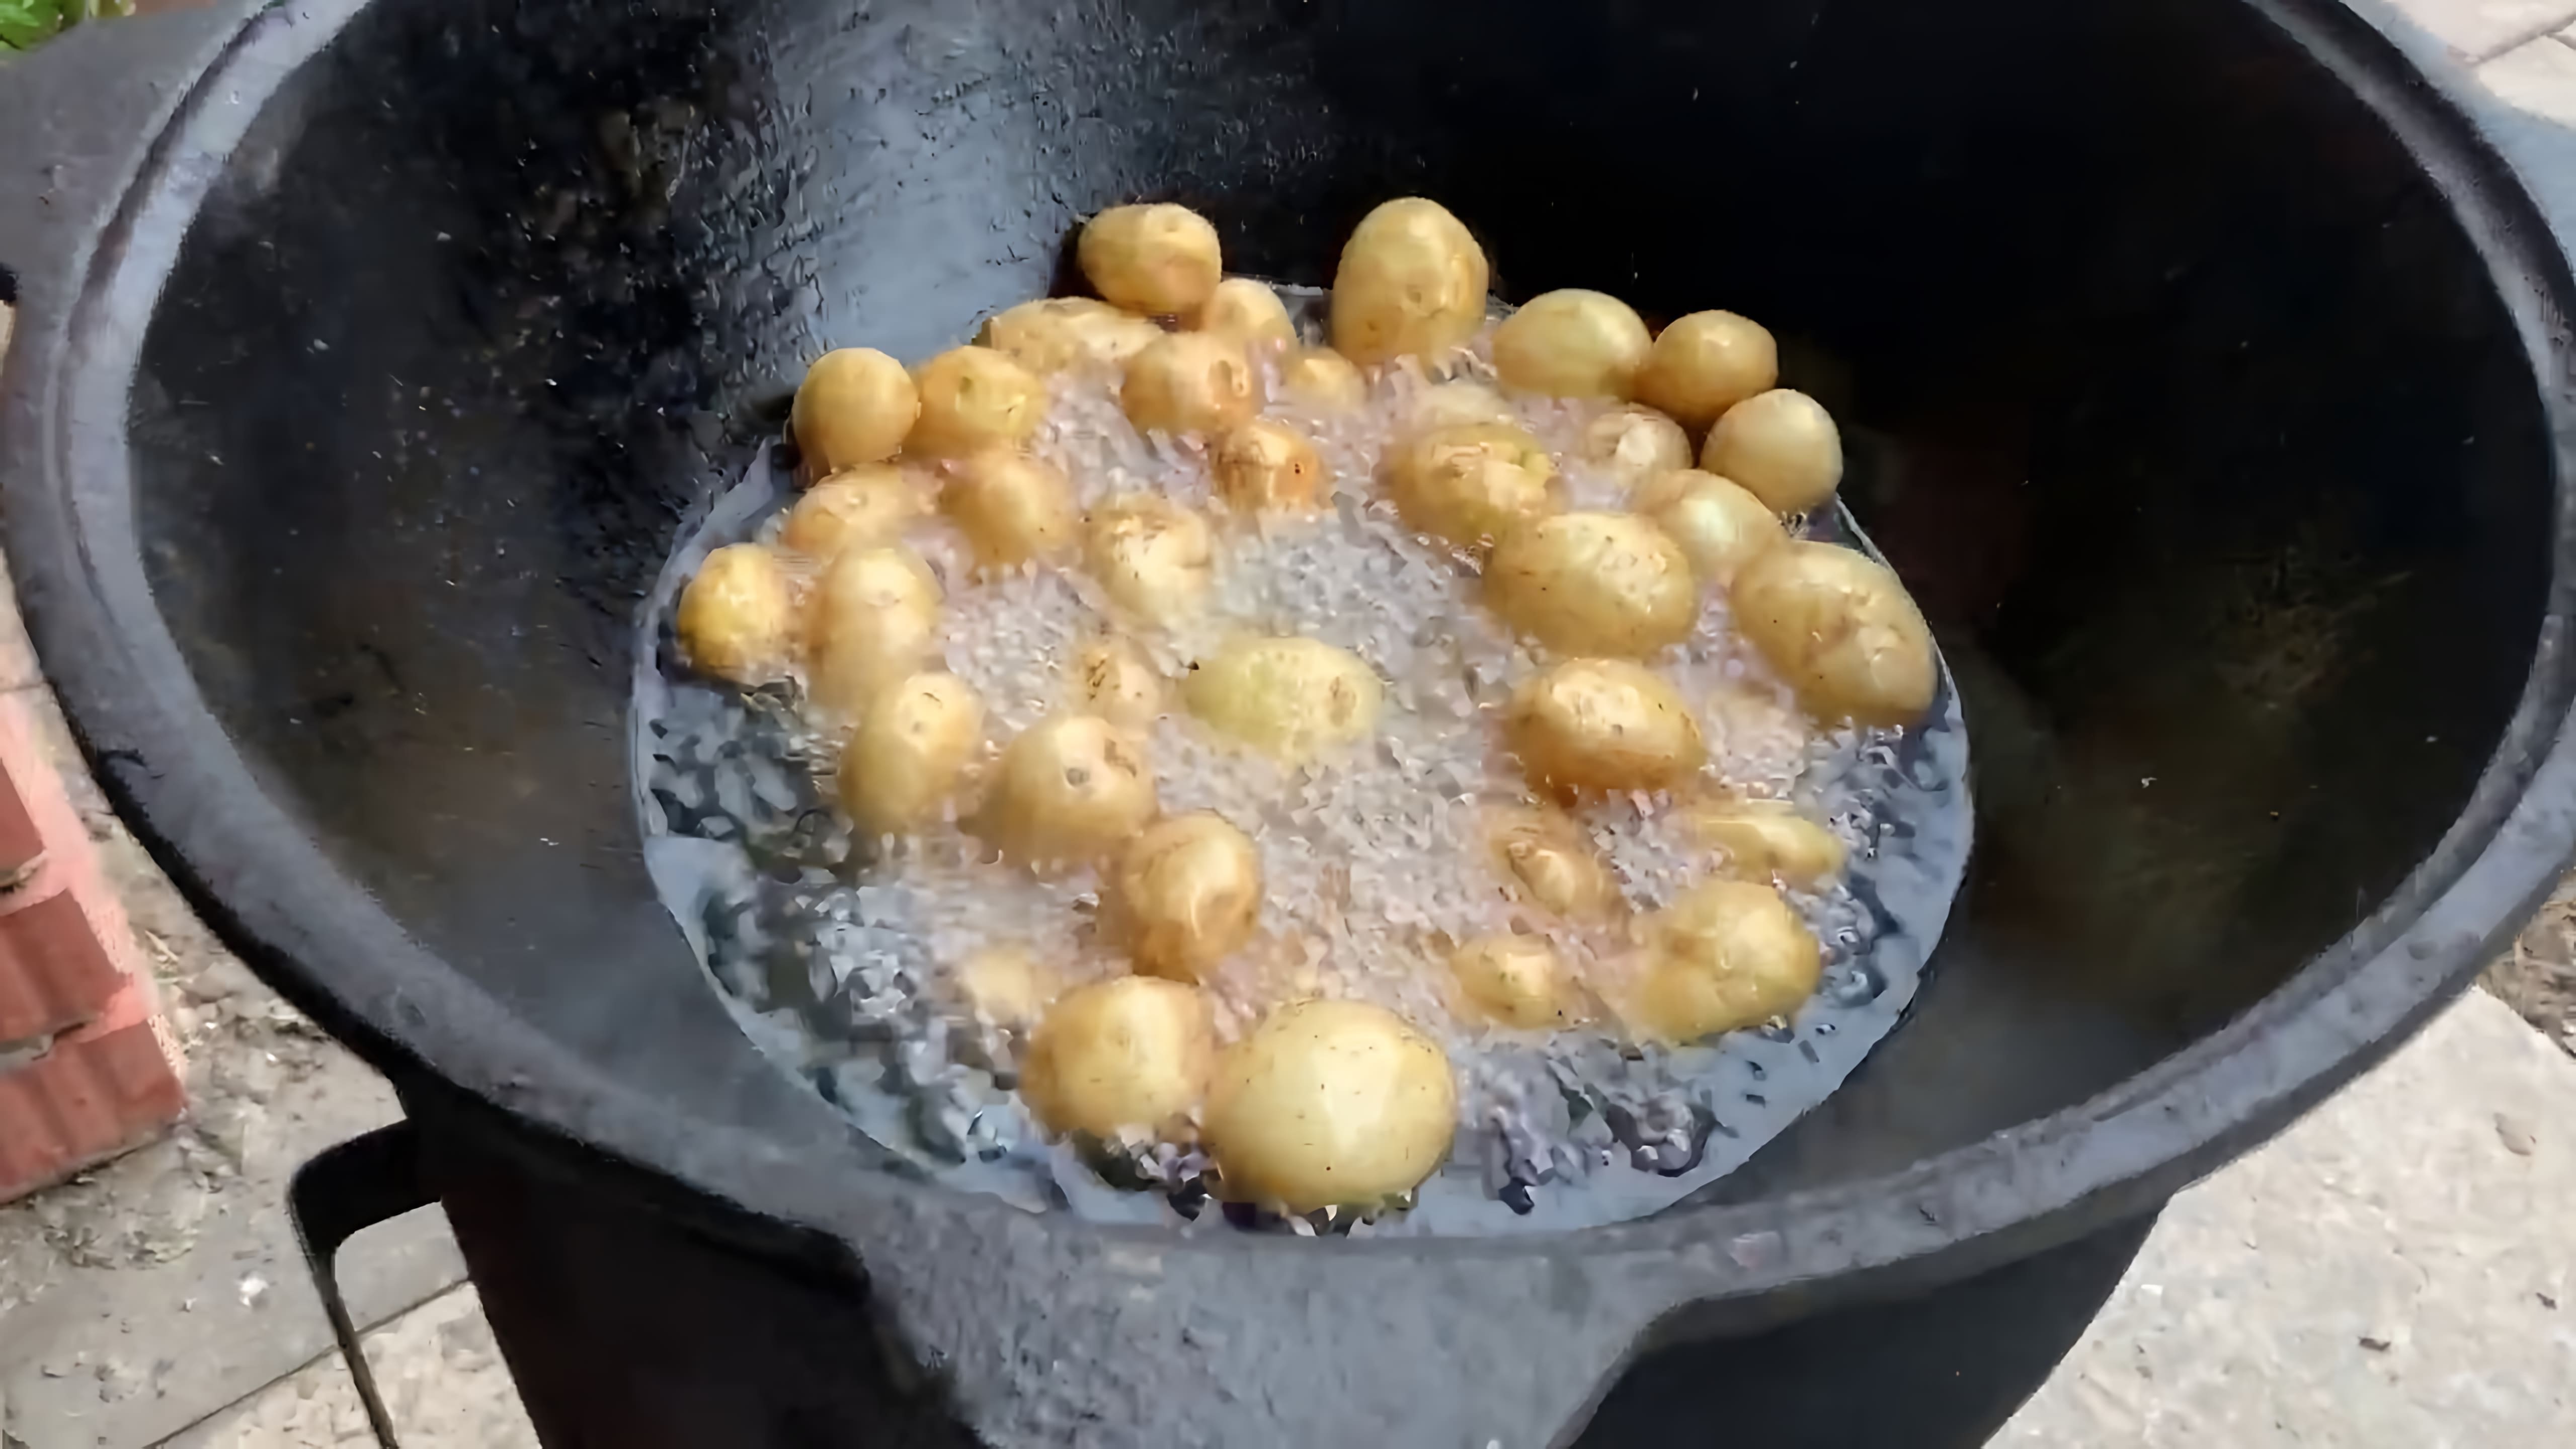 В этом видео демонстрируется процесс приготовления казан-кебаба из курицы и молодого картофеля